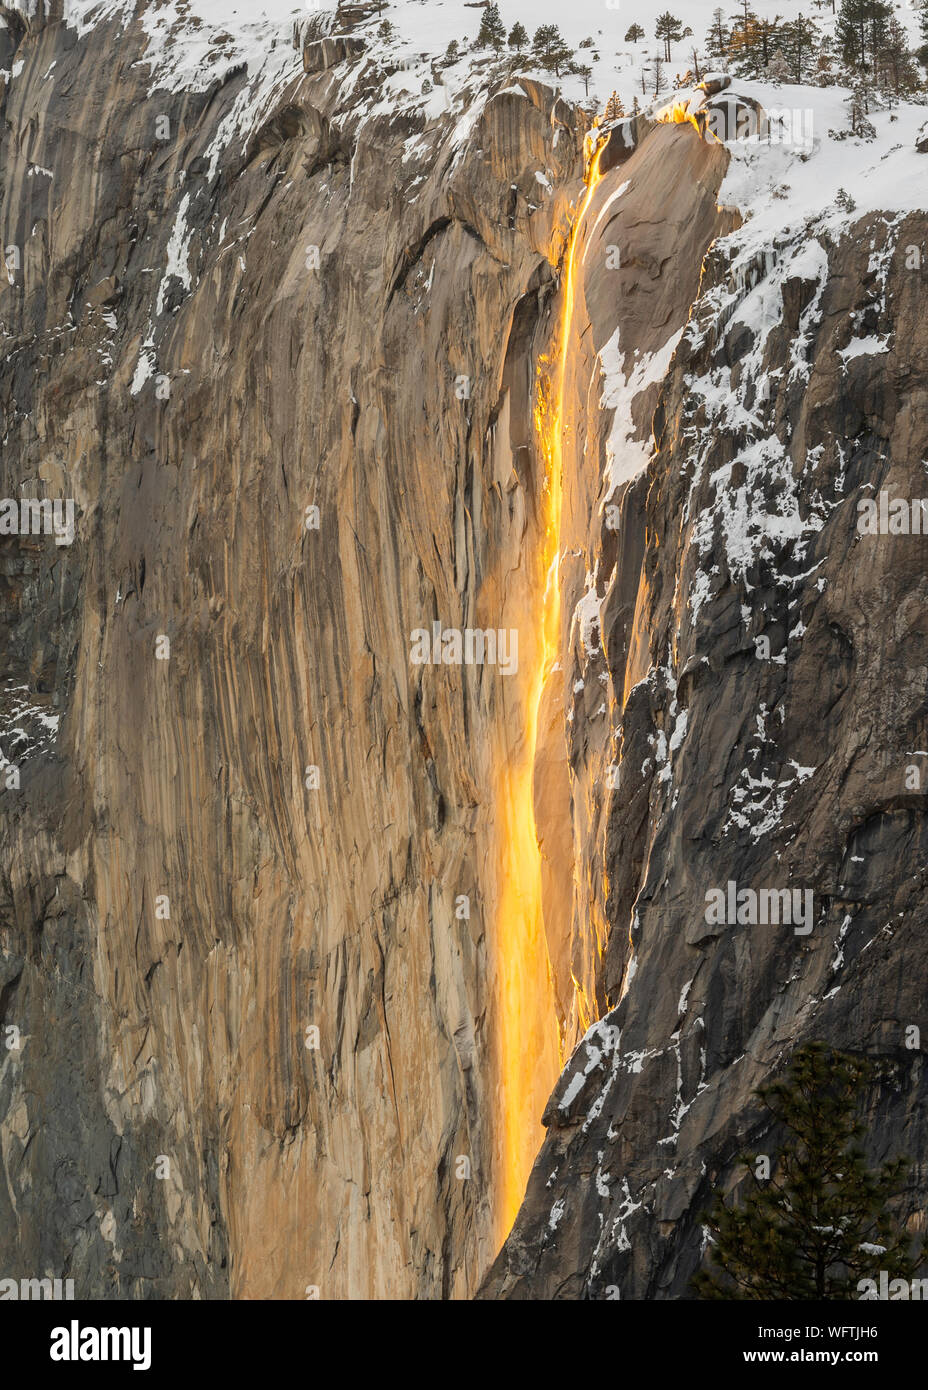 Equiseto o cola de caballo cae el Parque Nacional Yosemite Foto de stock